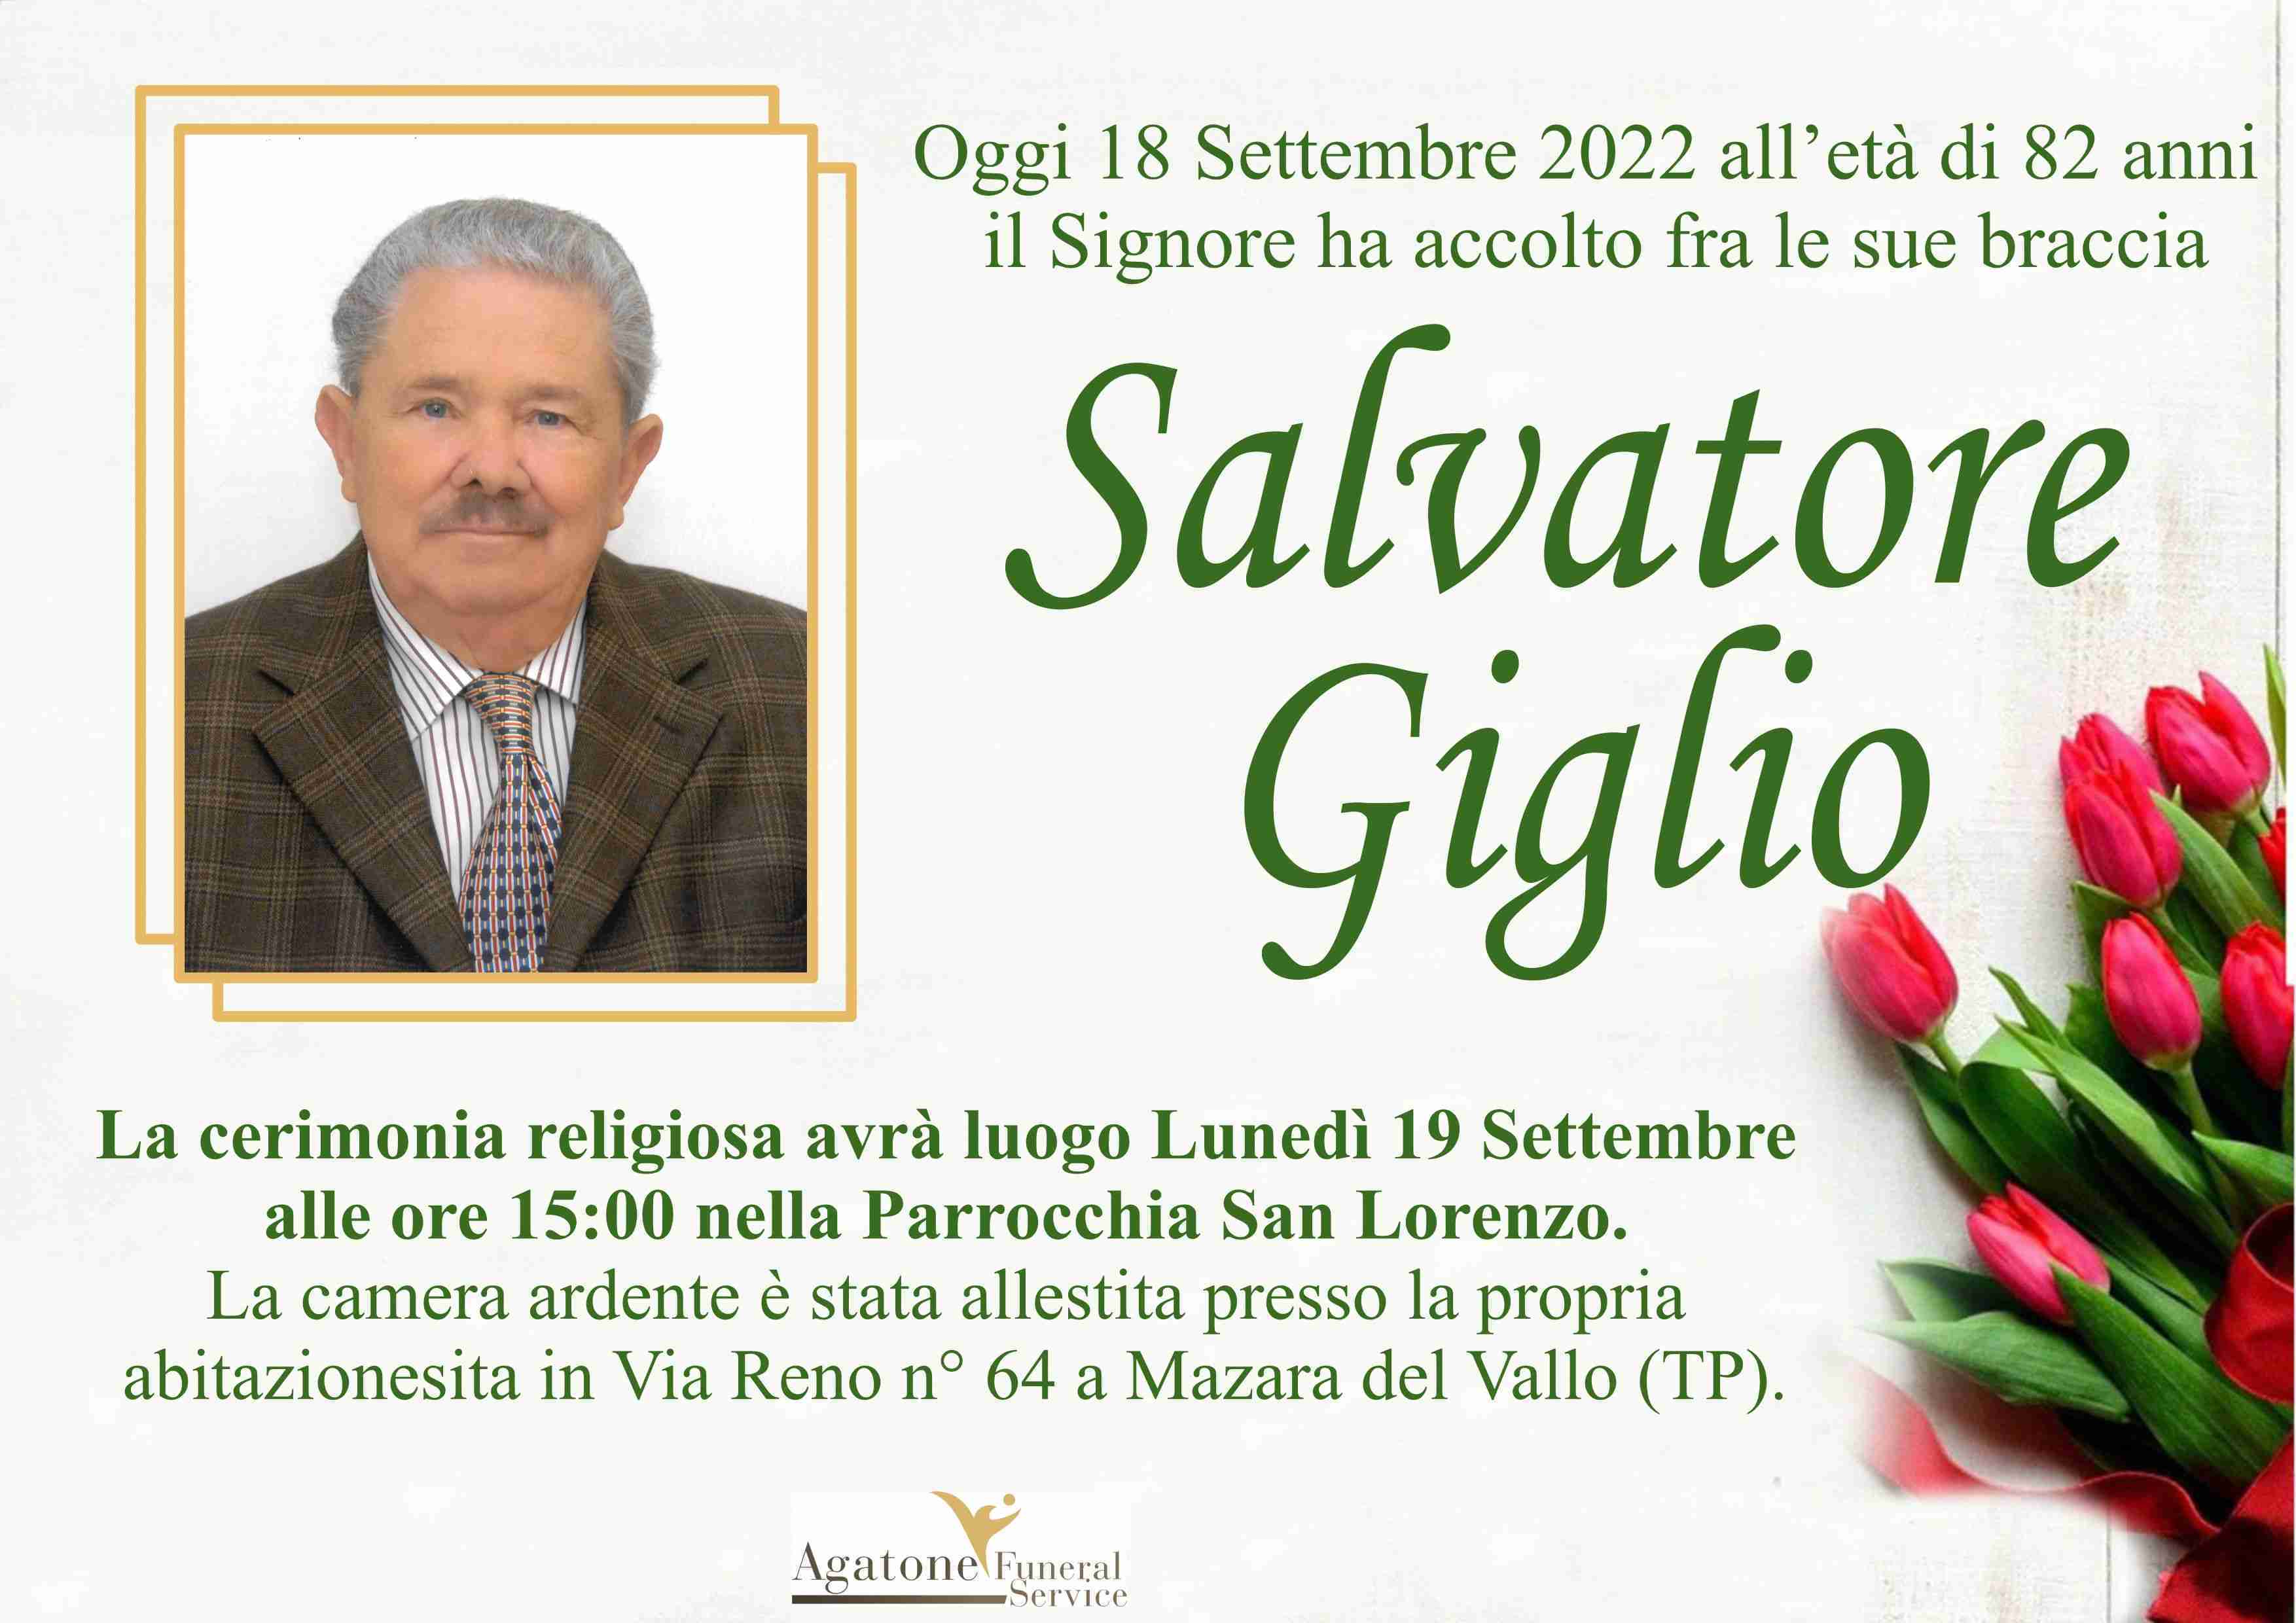 Salvatore Giglio